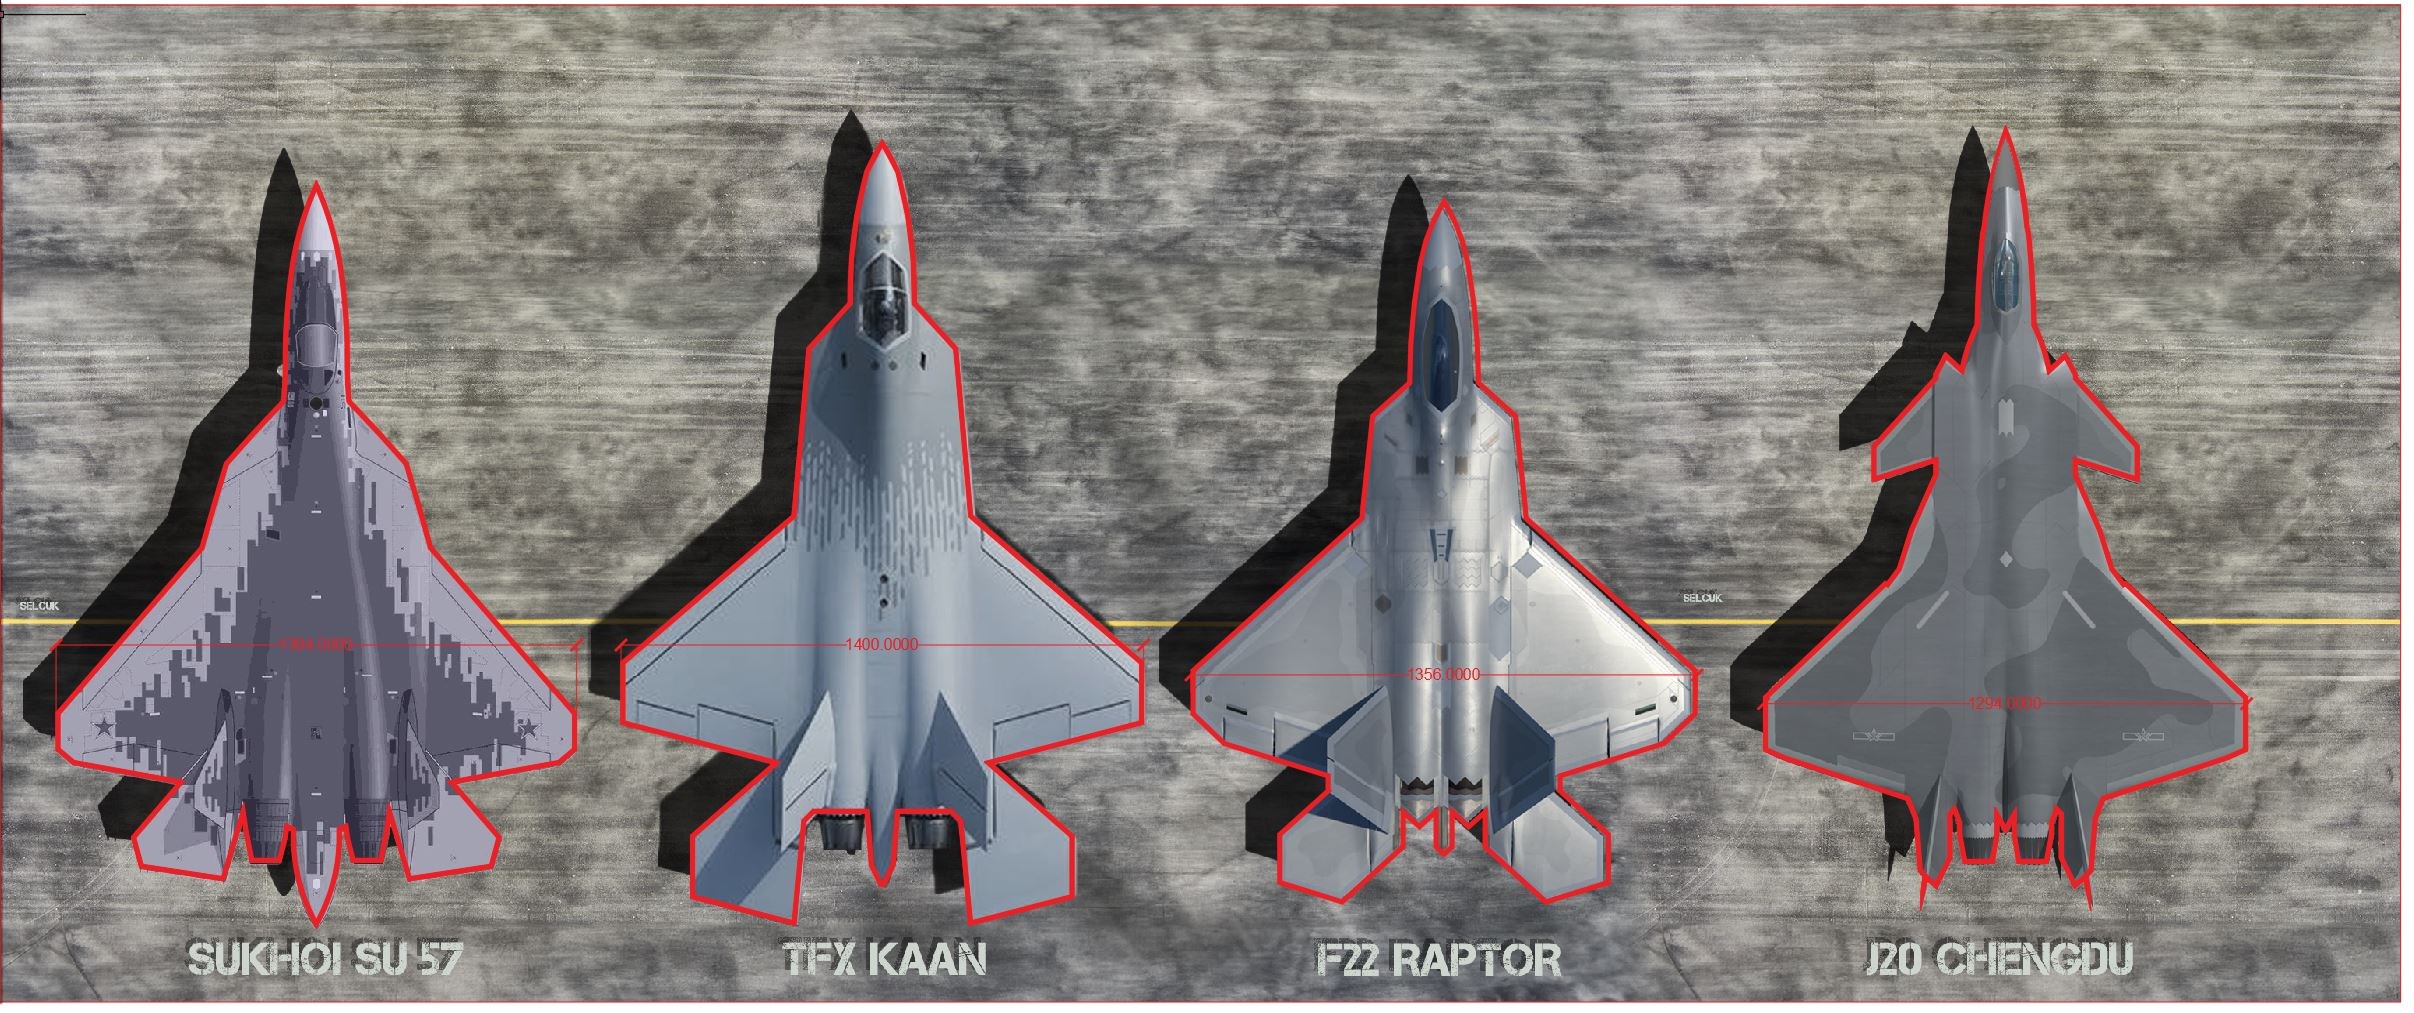 Milli savaş uçağı KAAN ile diğer uçakların boyut karşılaştırması